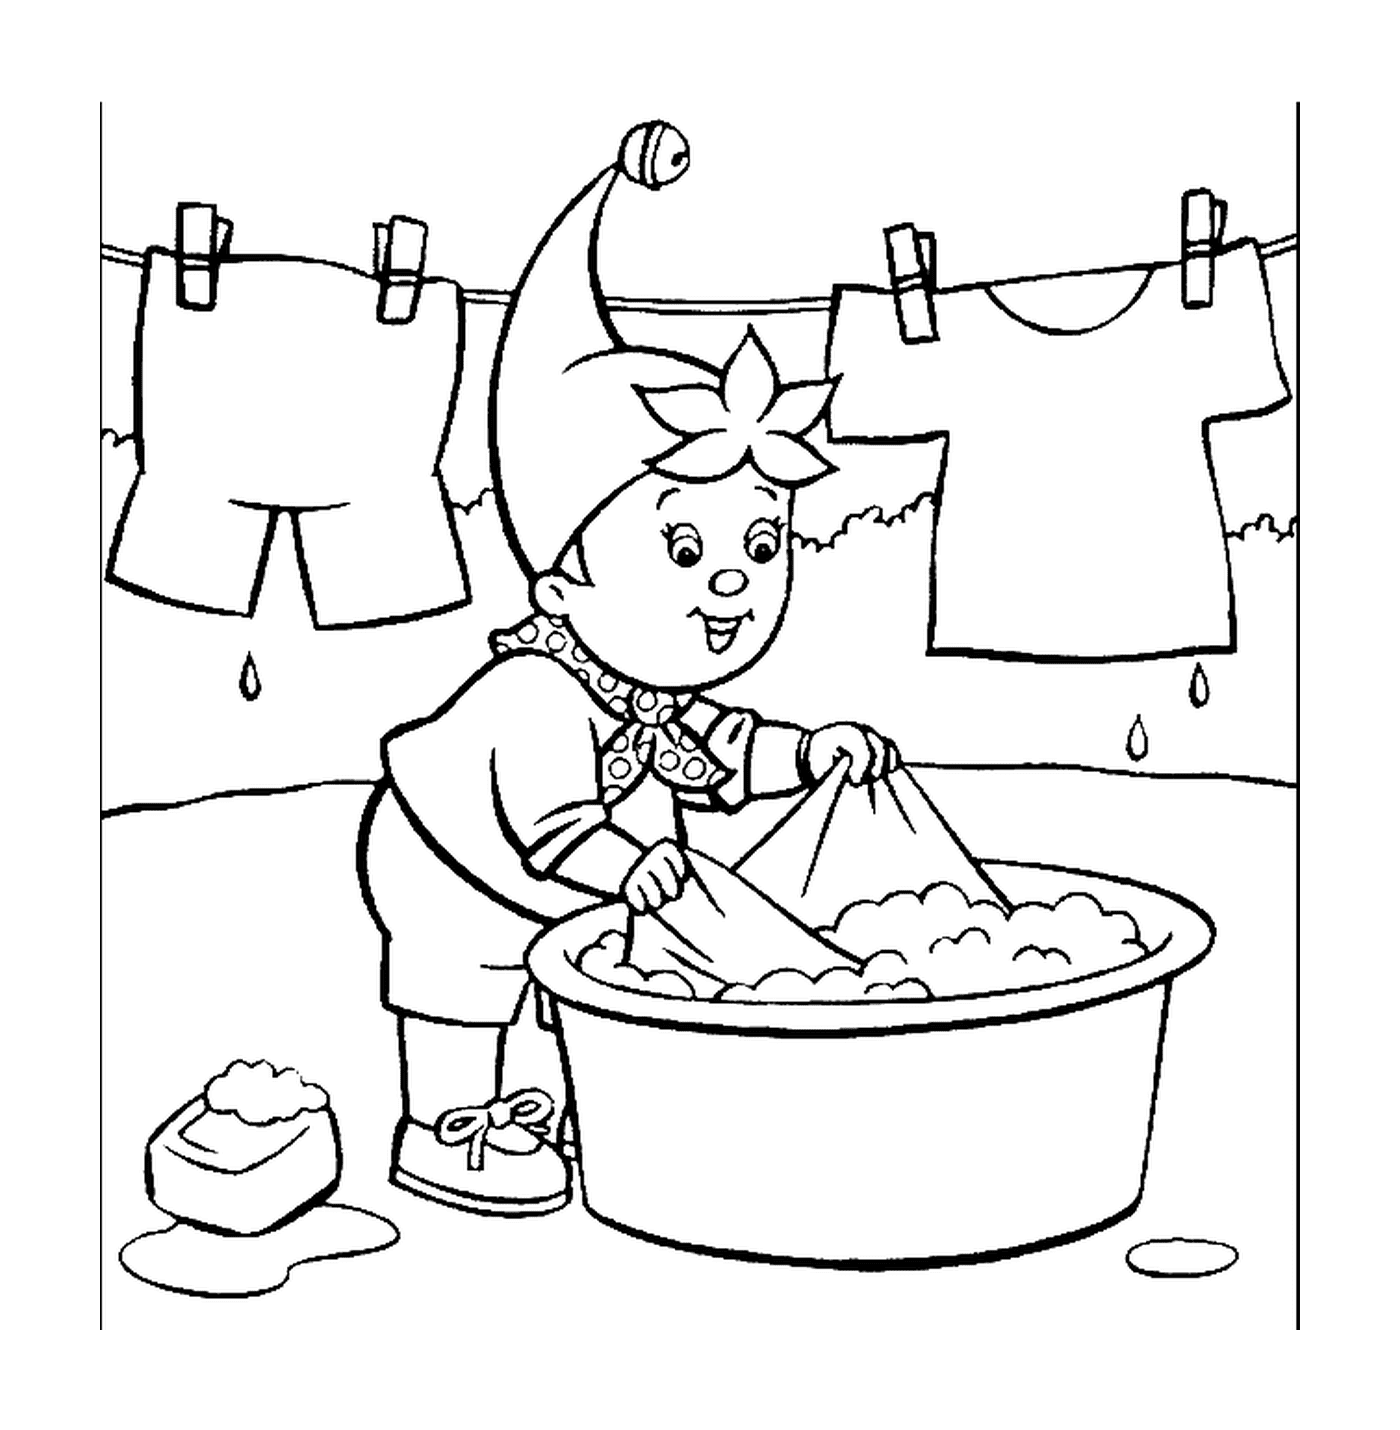  Ja Ja Waschen ihre Wäsche, arbeiten gnome 